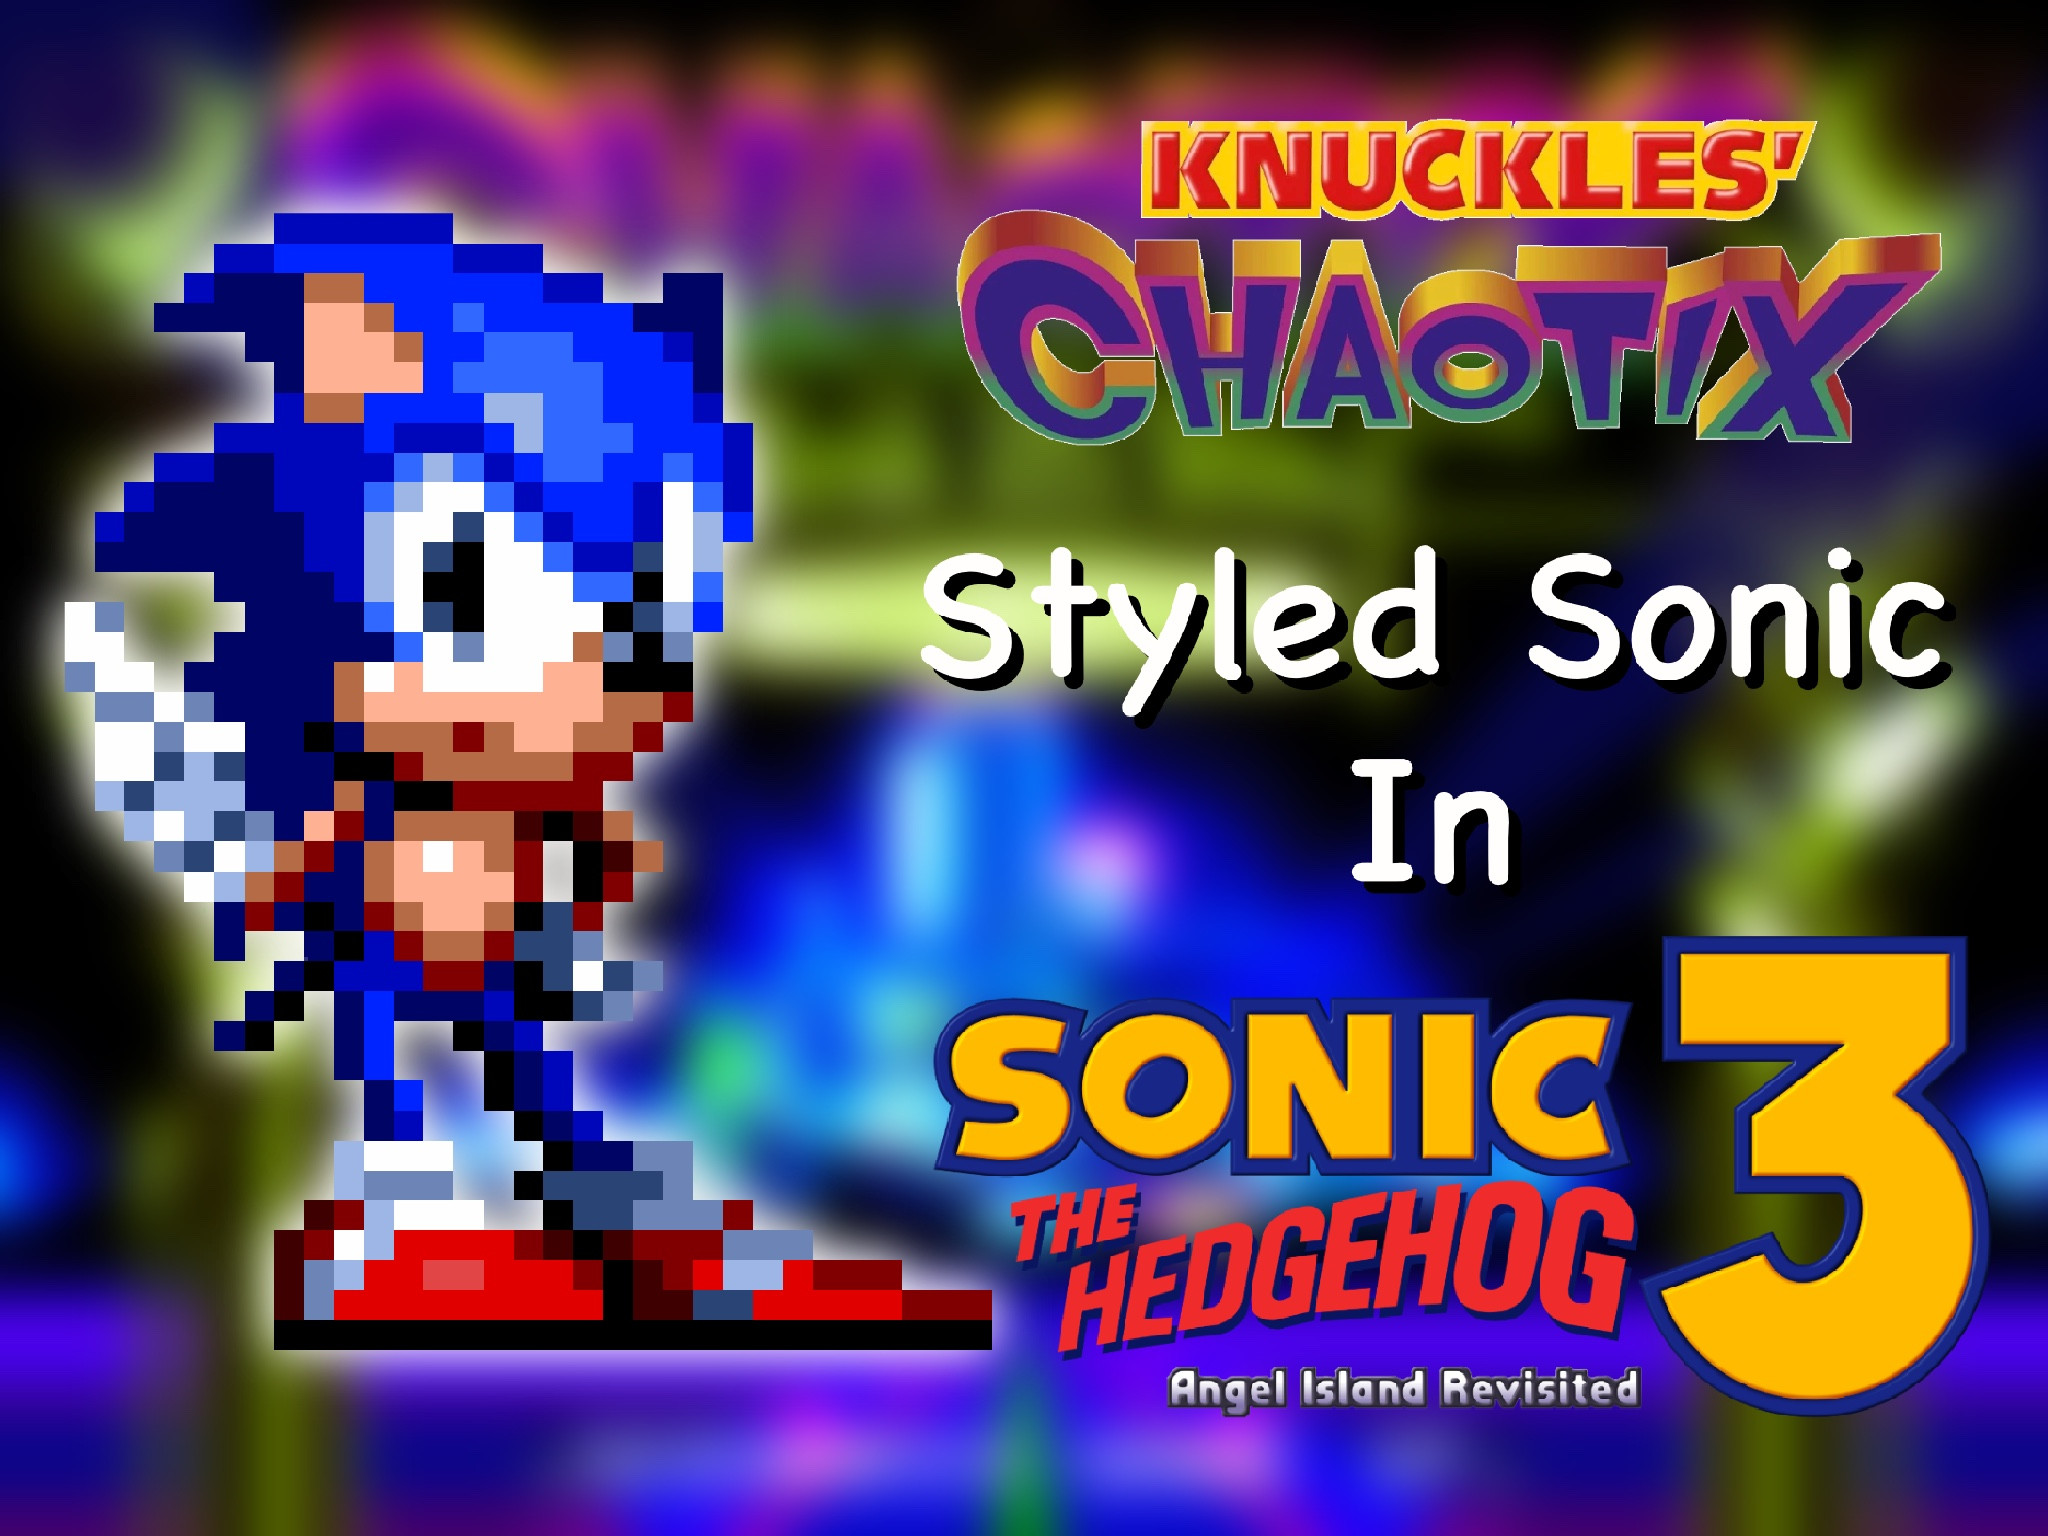 Sonic 3 air knuckles. ROM Соник 3 АИР. Мод Sonic 3 АИР. Sonic 3 Air Mods. Sonic 3 a.i.r Mods.